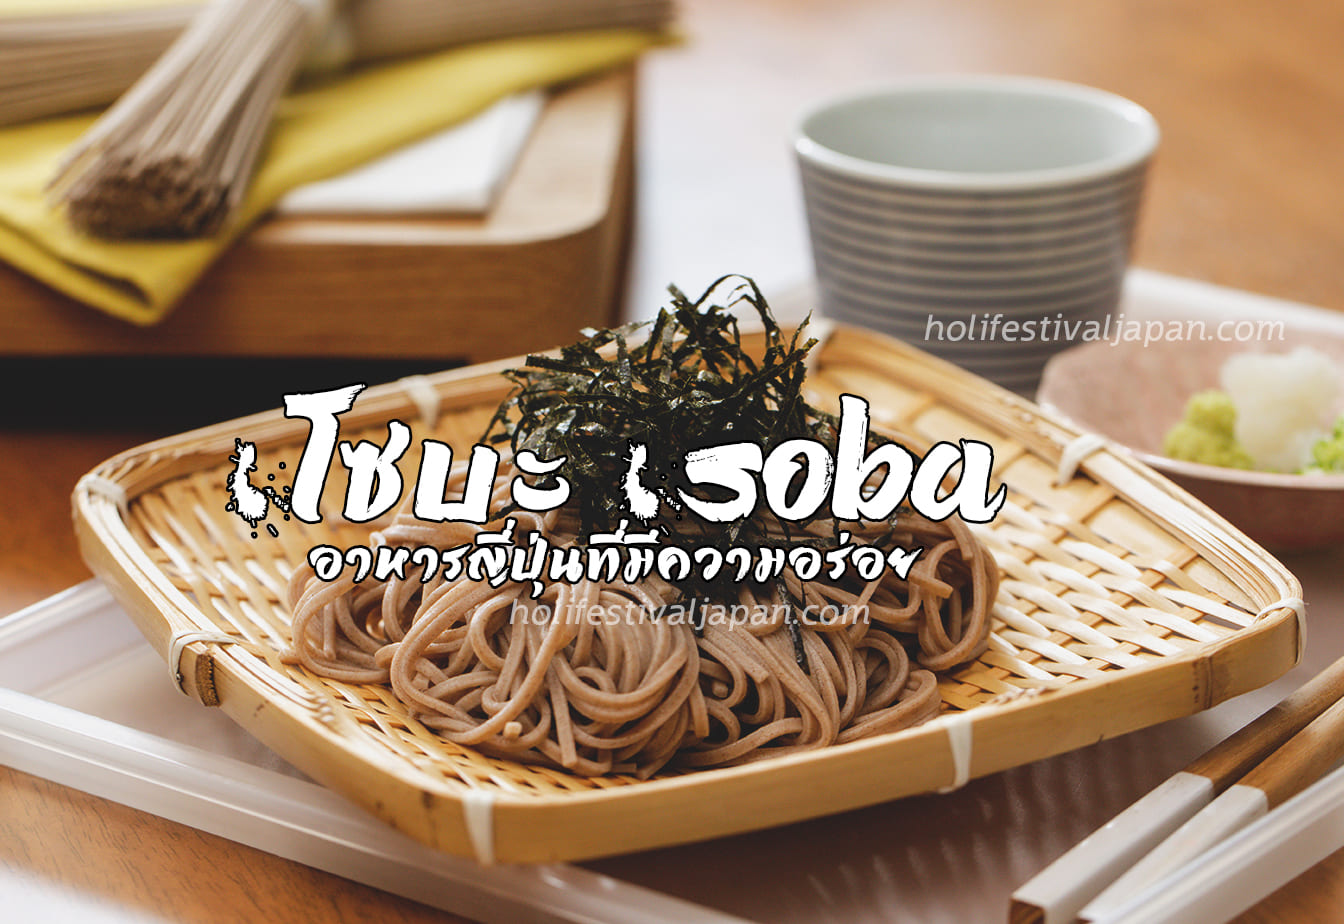 โซบะ (Soba) อาหารญี่ปุ่นที่มีความอร่อย สามารถนำไปทำอาหารได้หลากหลาย